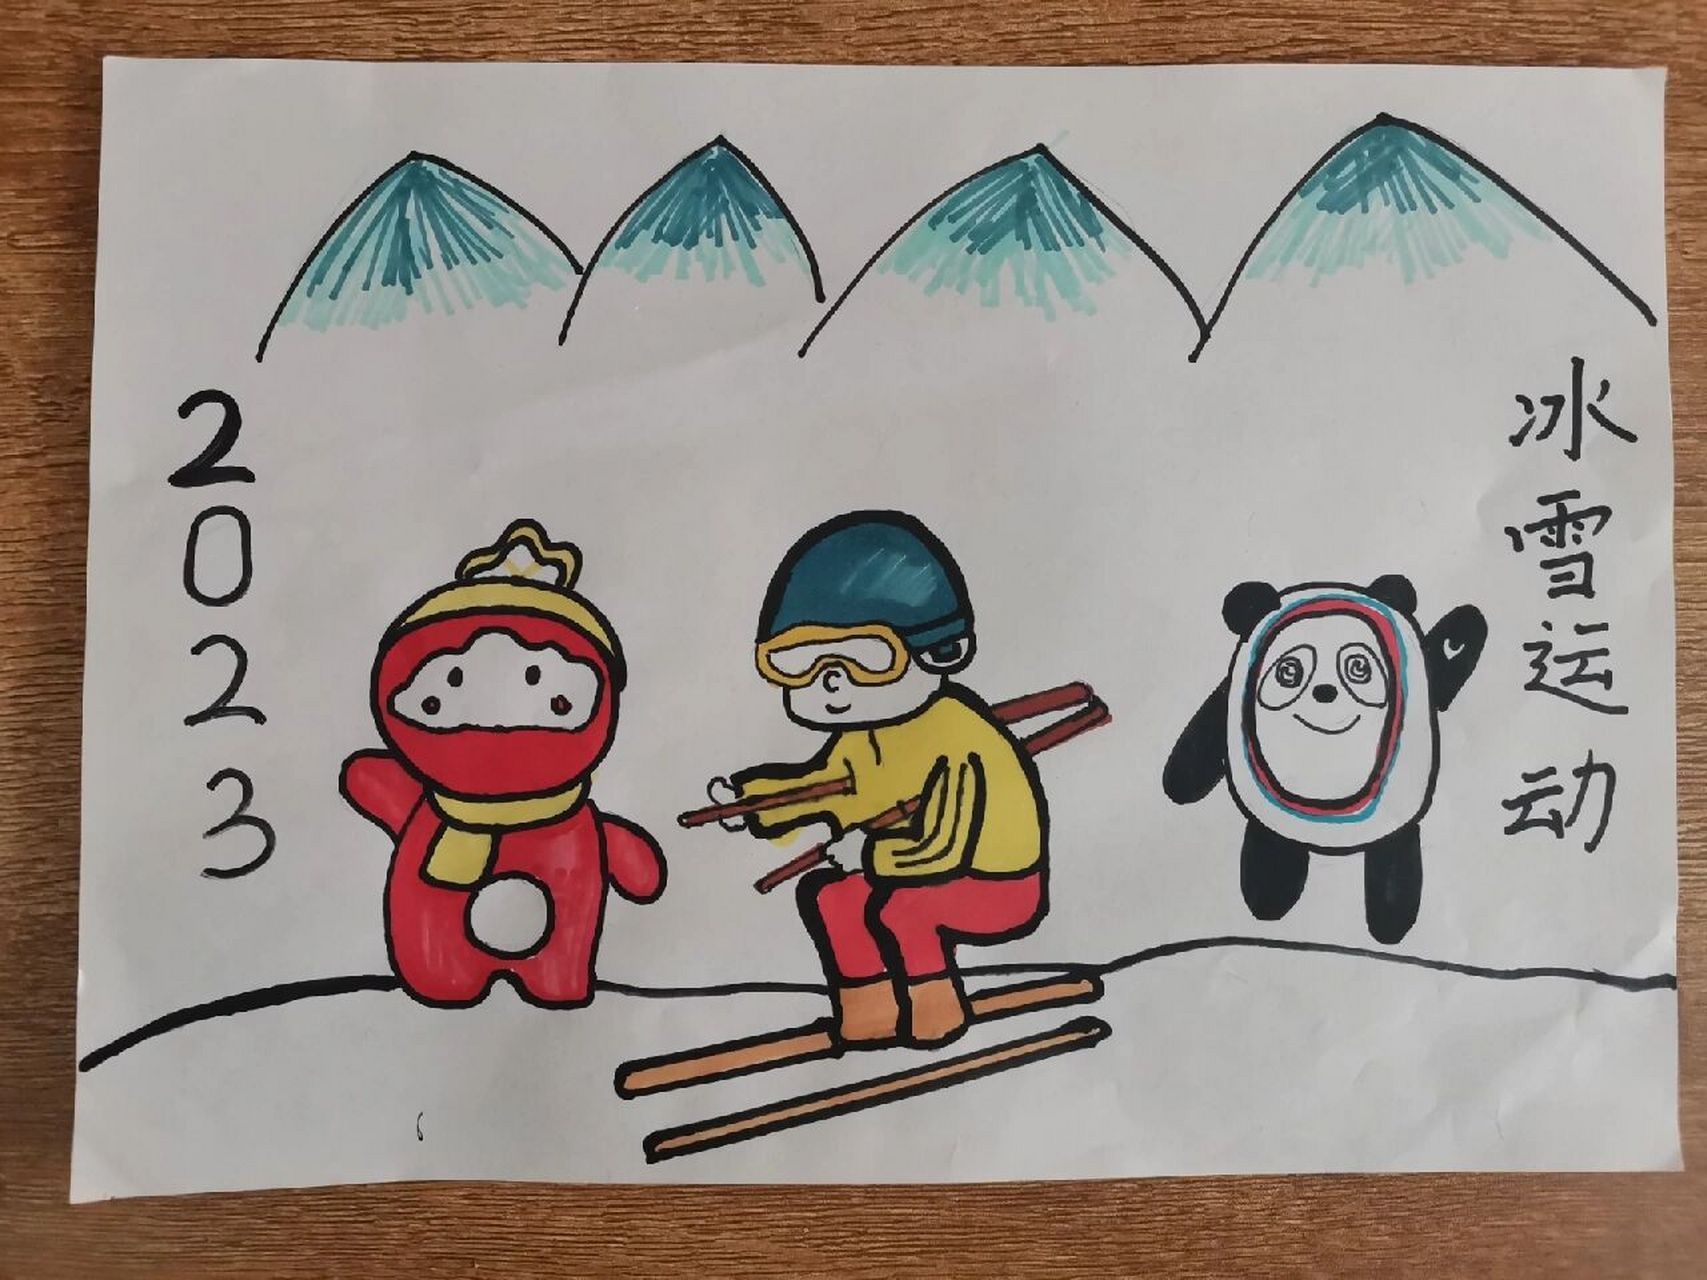 冰雪运动绘画三年级图片